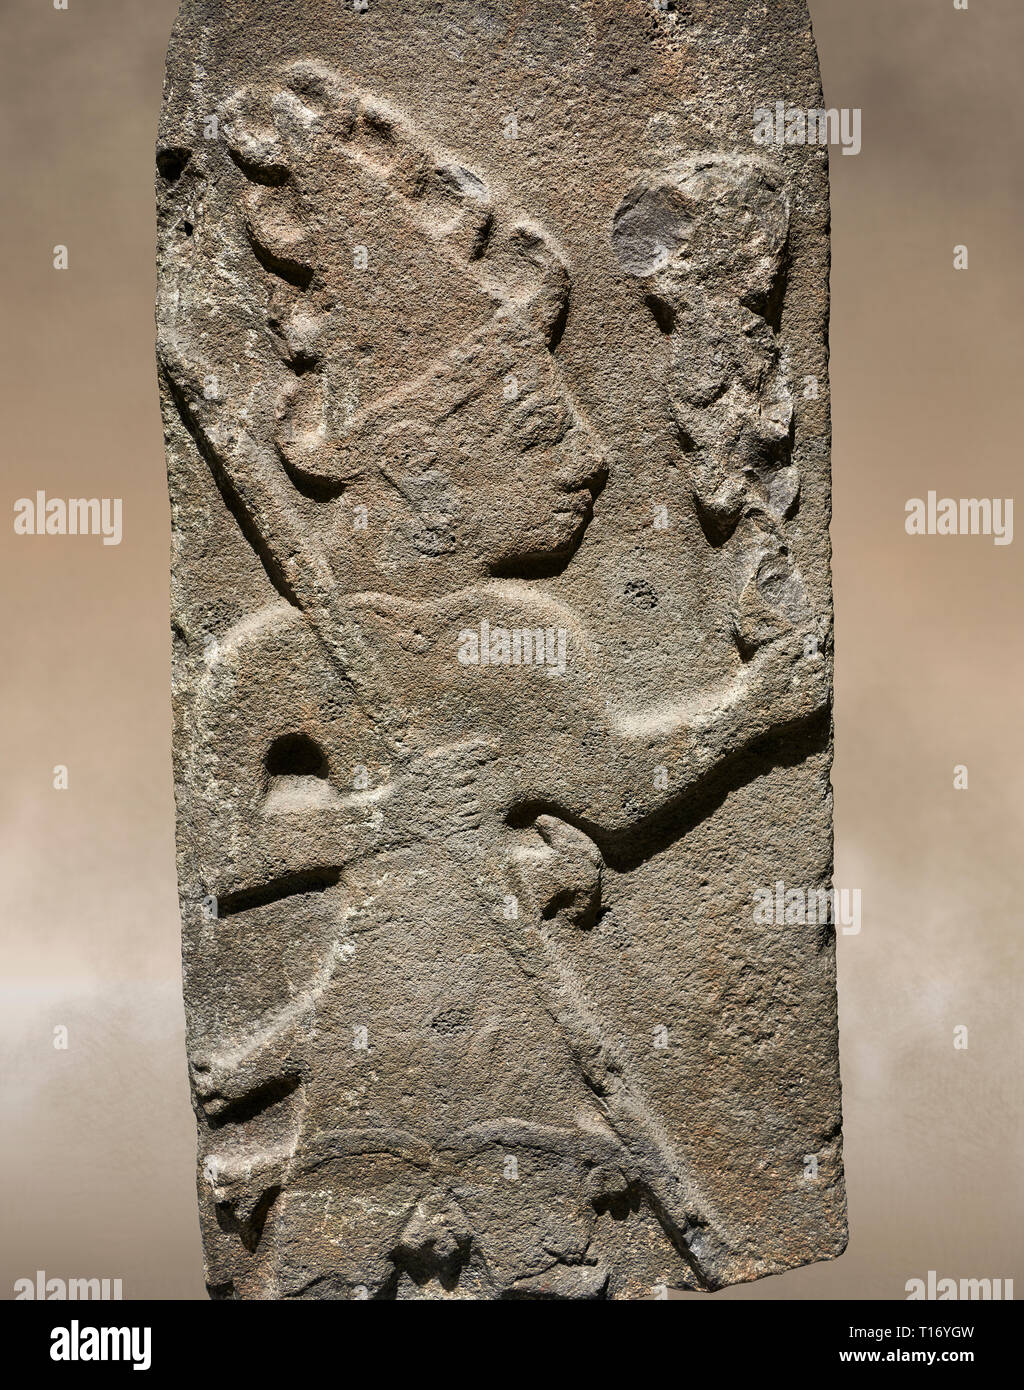 Hethiter monumentale Relief ofa Gott wahrscheinlich Holding Fangstangen. Ende der hethitischen Zeit - 900-700 BC. Archäologisches Museum Adana, Türkei. Stockfoto